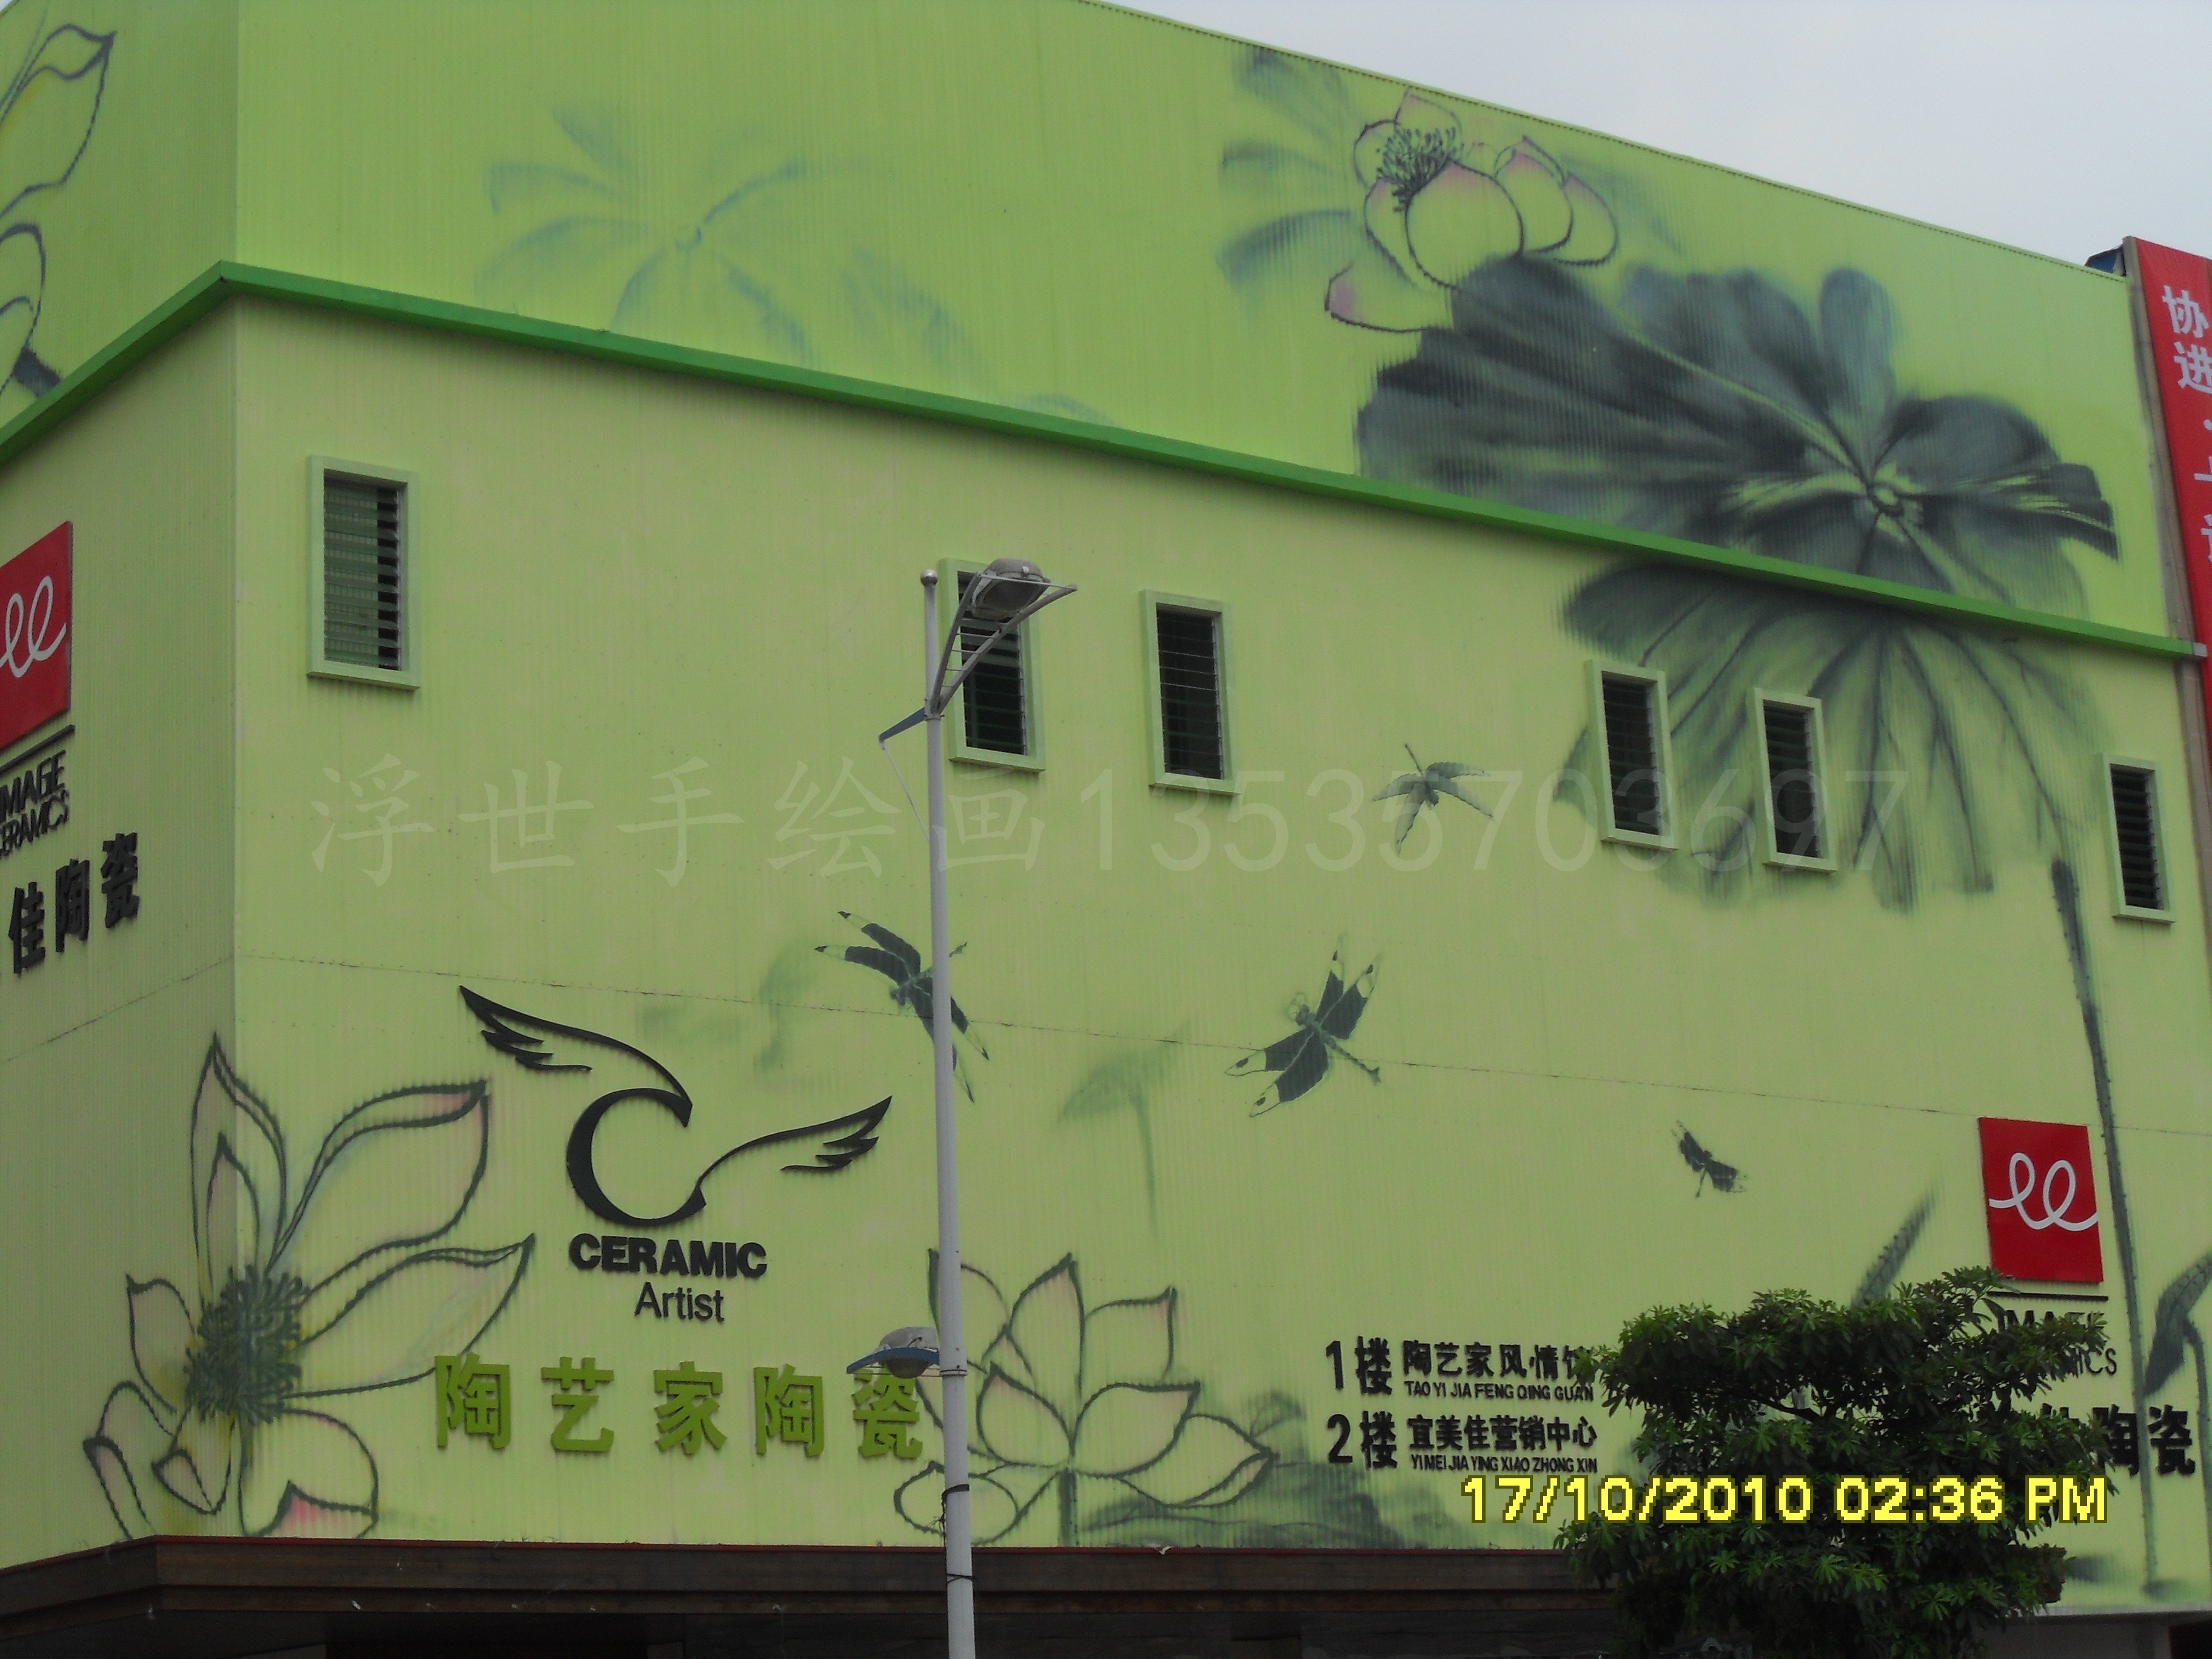 三水大型创意展馆外墙涂装彩绘批发